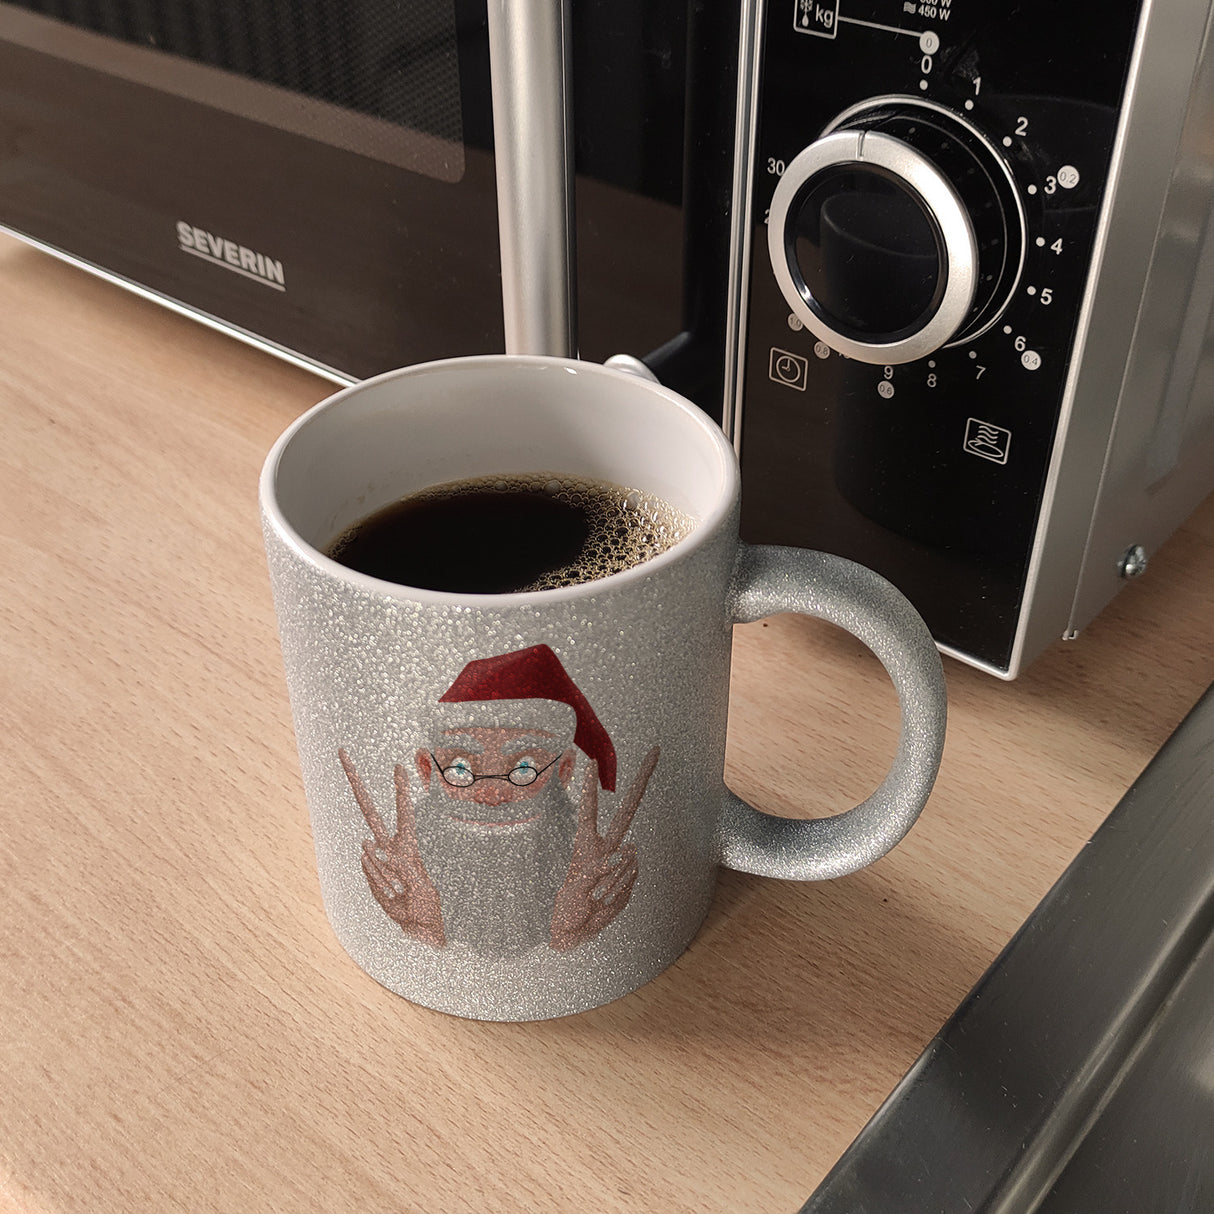 Chill es ist Weihnachten Kaffeetasse mit lustigem Weihnachtsmann